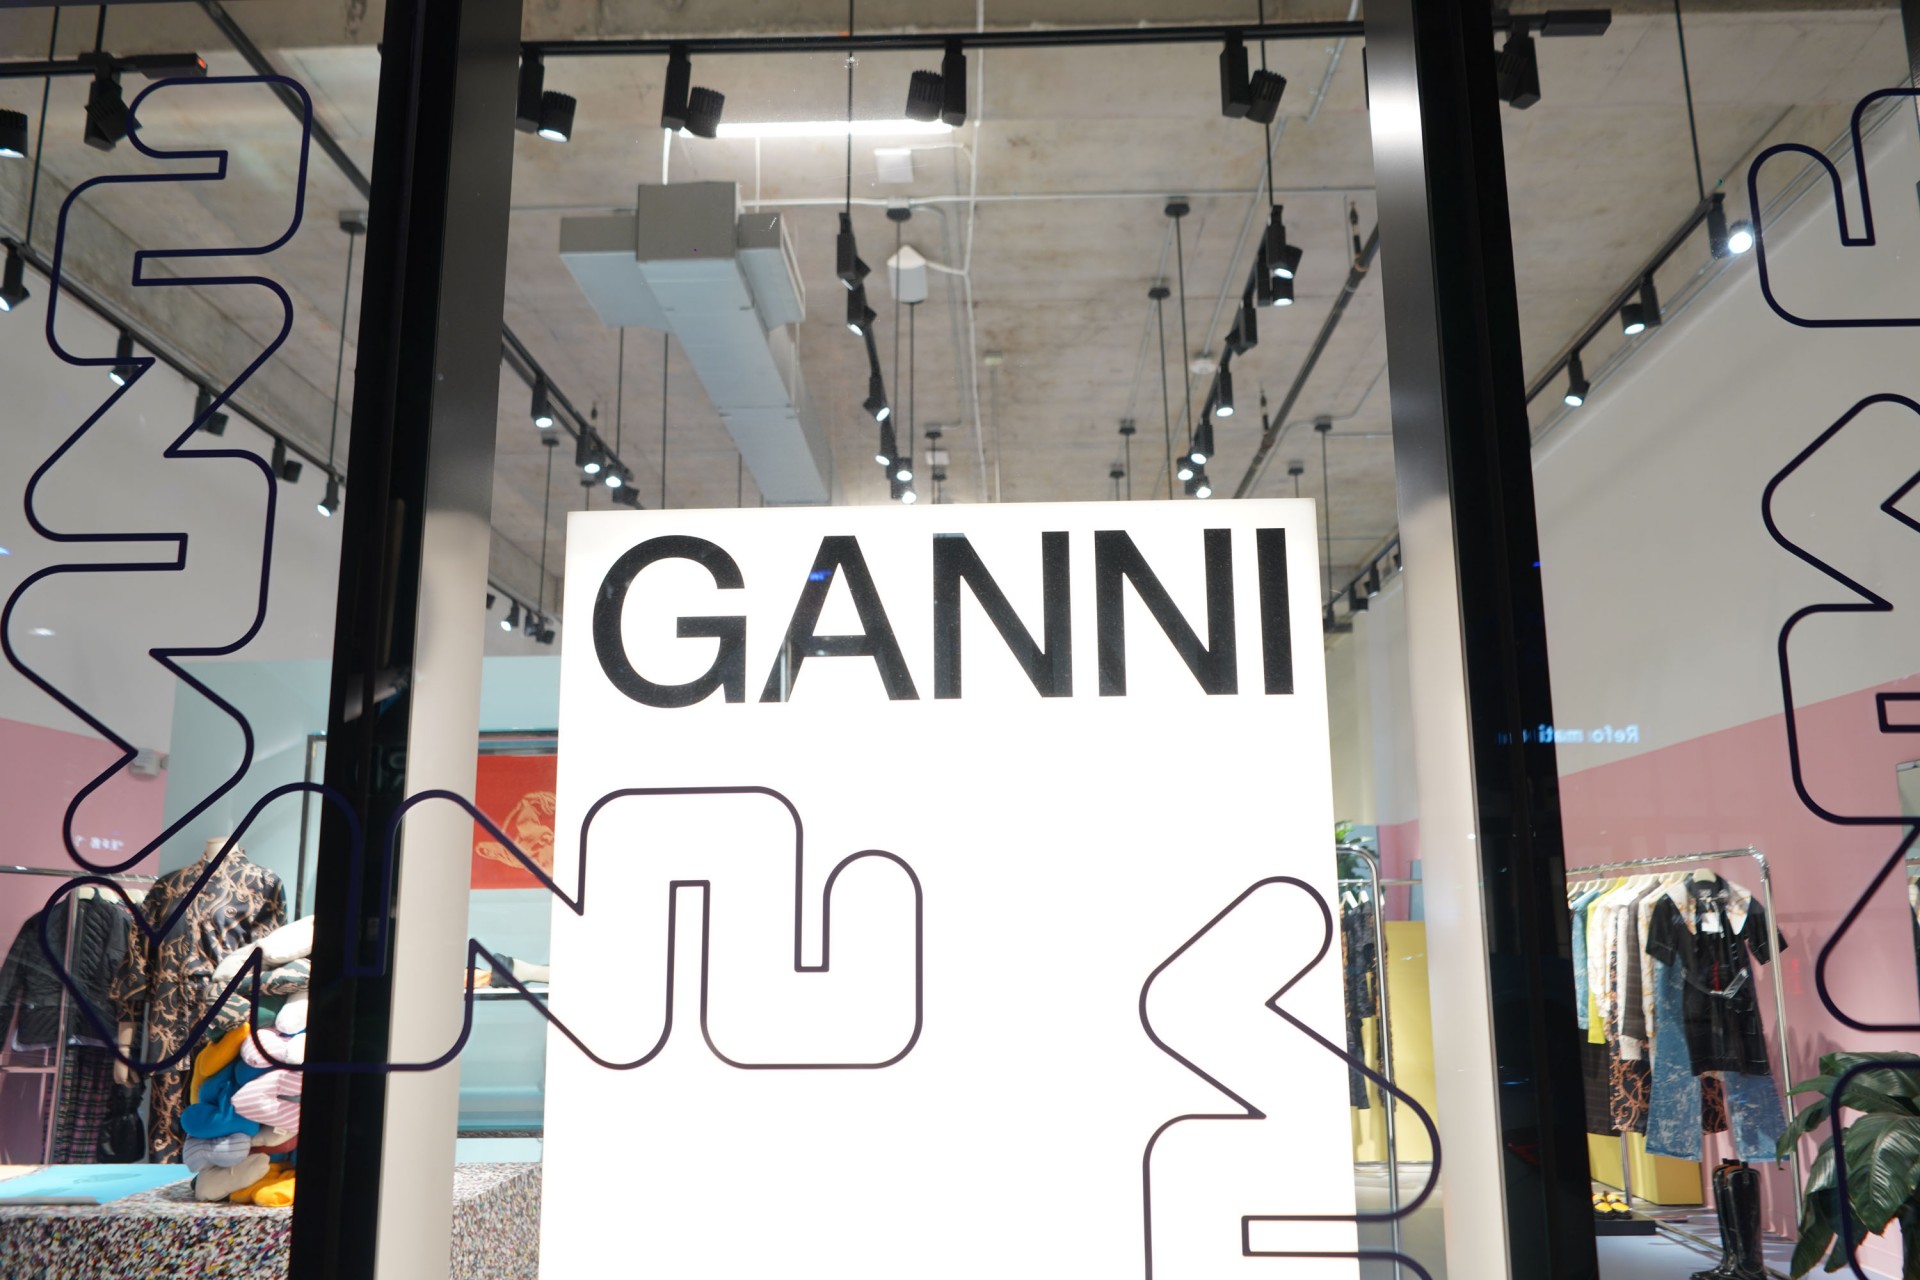 Ganni Art Gallery Exhibit